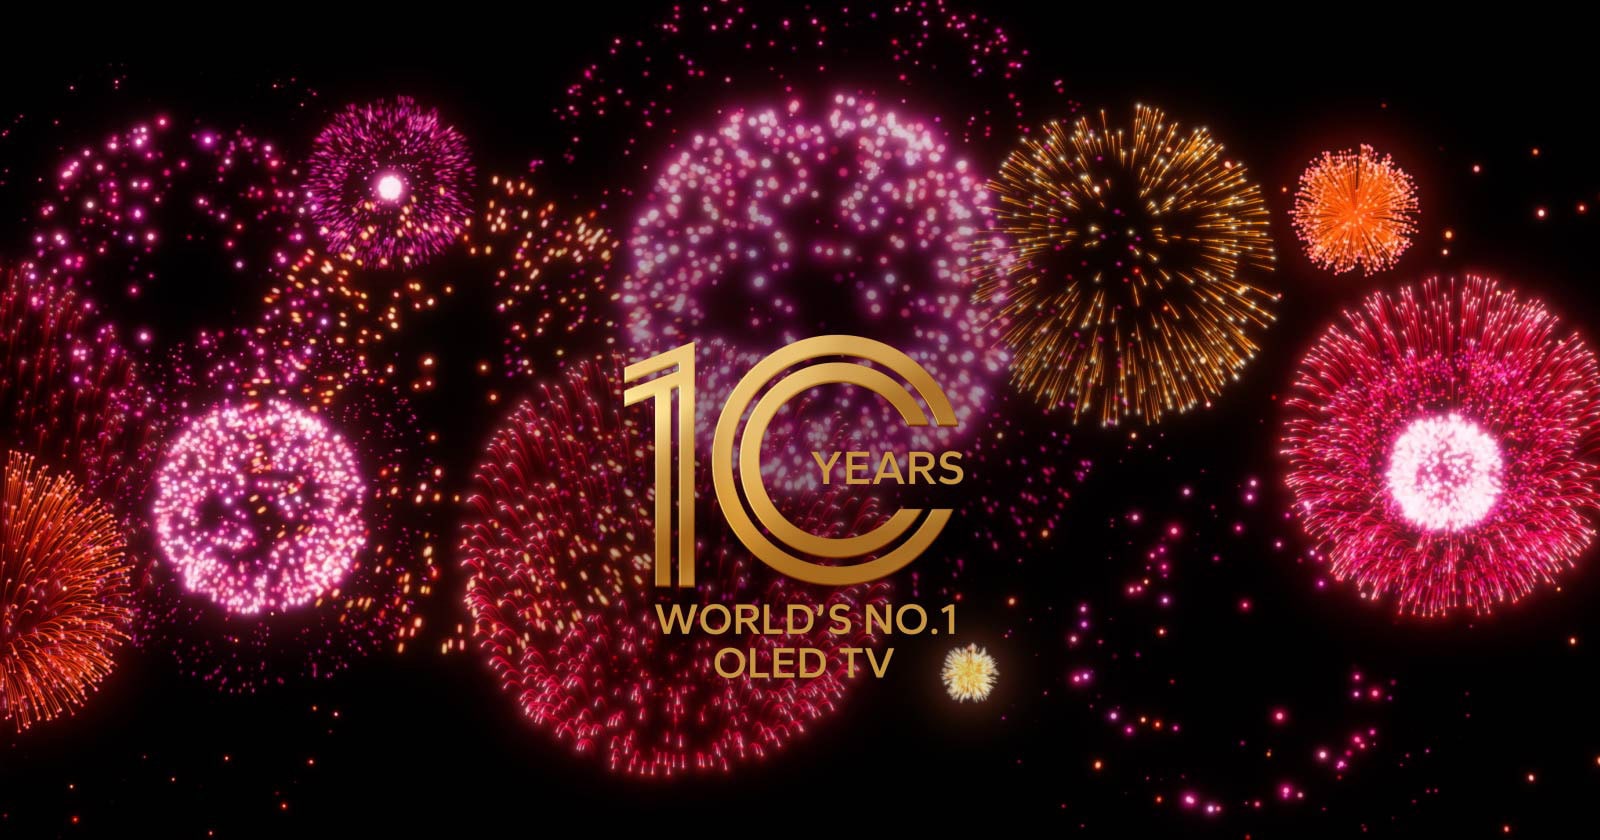 Videoposnetek prikazuje emblem »10-letna številka 1 na svetu OLED TV«, ki počasi bledi na črnem ozadju z vijoličnim, roza in oranžnim ognjemetom.